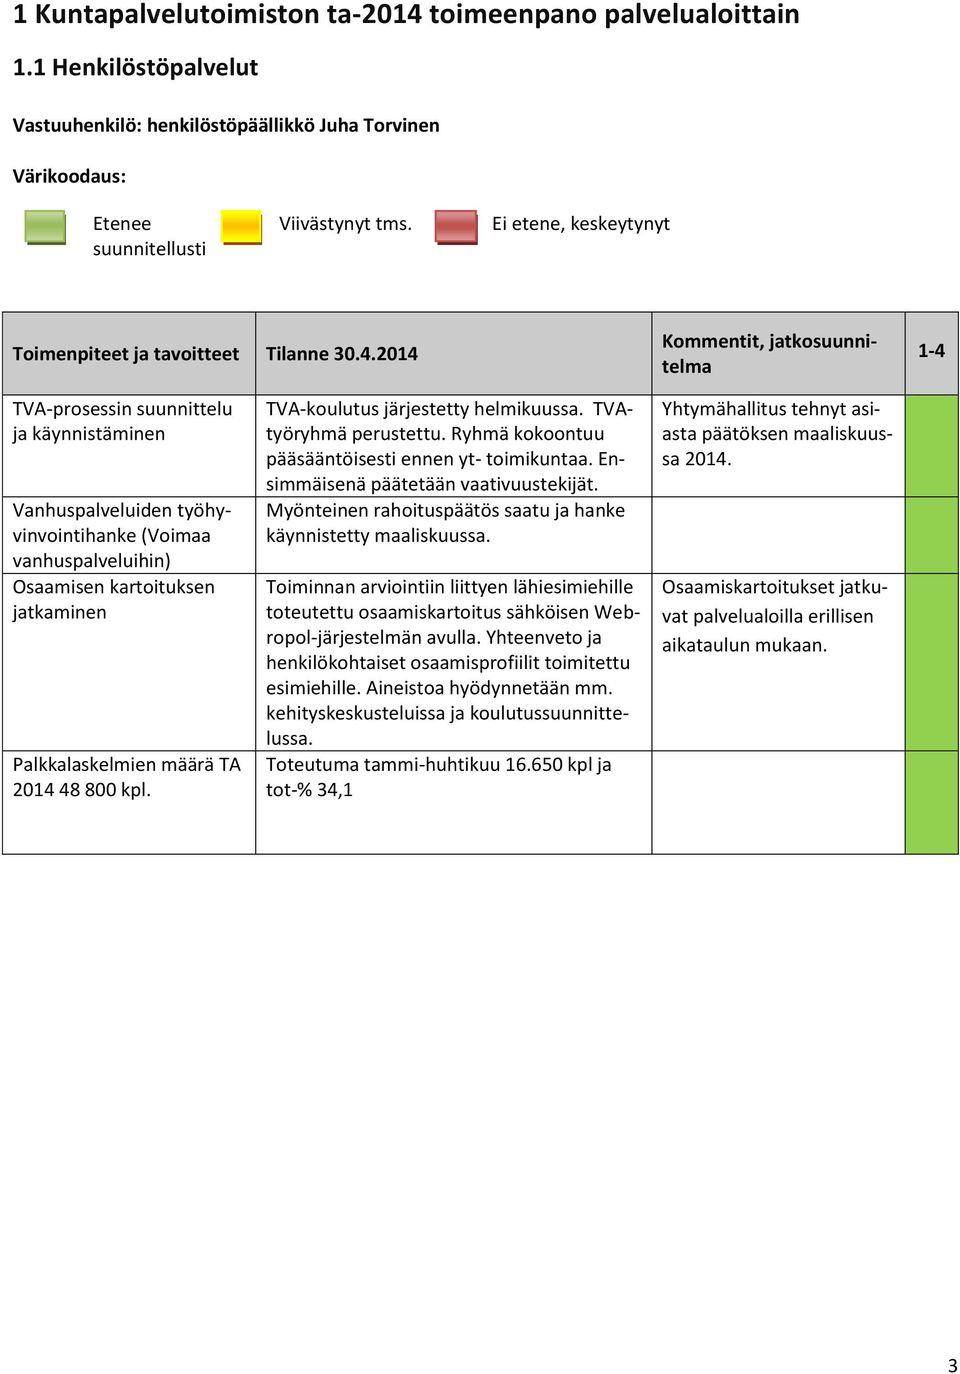 2014 Kommentit, jatkosuunnitelma 1-4 TVA-prosessin suunnittelu ja käynnistäminen Vanhuspalveluiden työhyvinvointihanke (Voimaa vanhuspalveluihin) Osaamisen kartoituksen jatkaminen Palkkalaskelmien